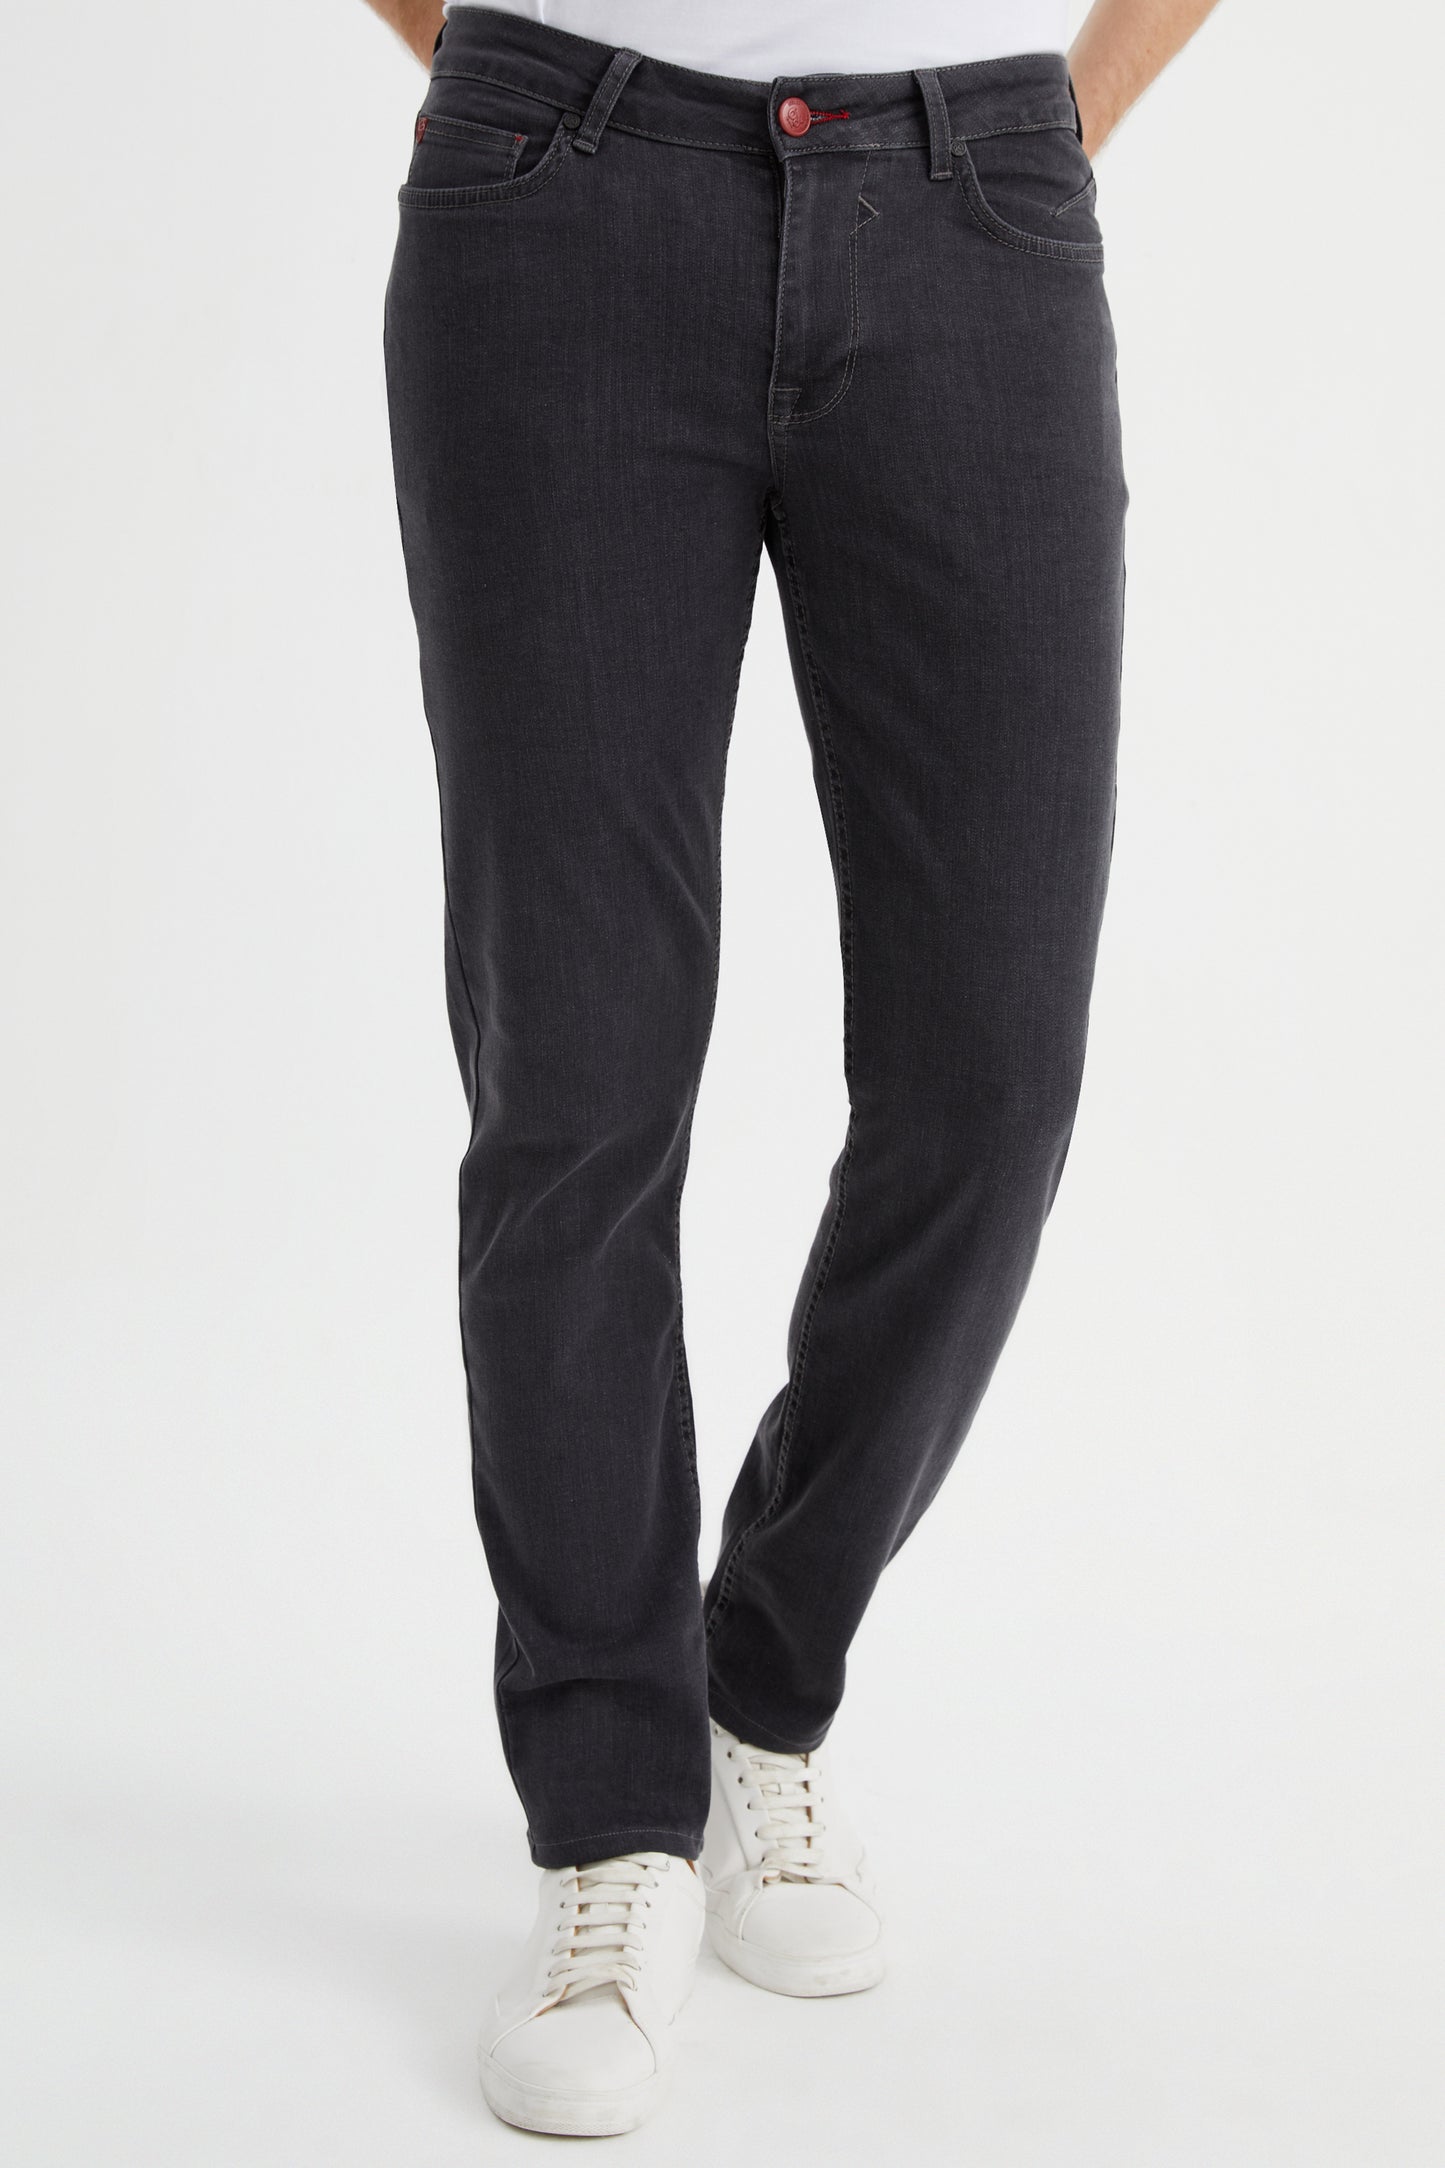 DFR89 Jeans - Brunello/Dark Grey